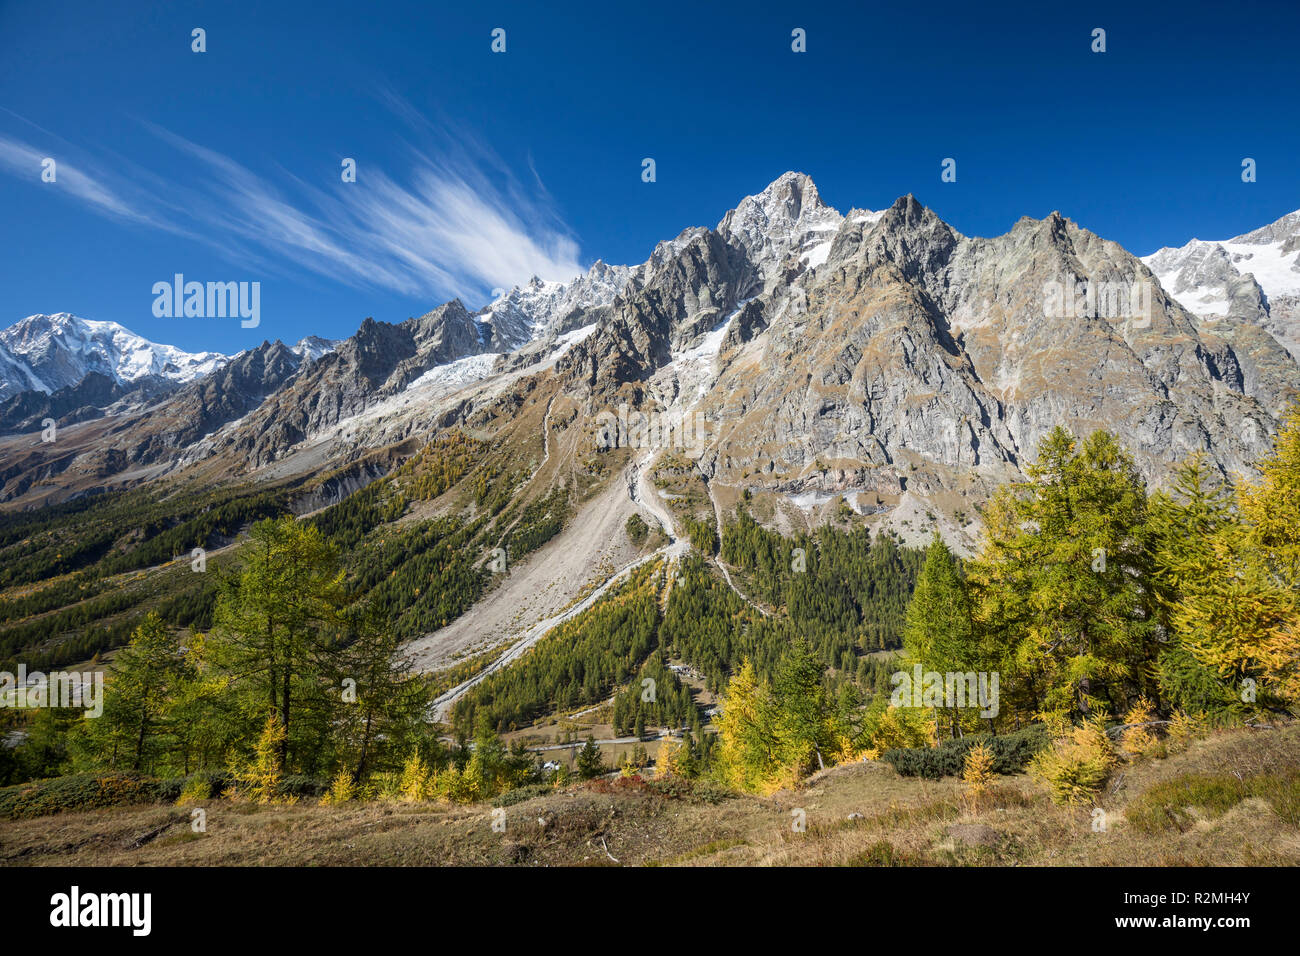 Blick über das herbstliche Val Ferret zum Grandes Jorasses (4208m), Mont-Blanc-Massiv, Nähe Courmayeur, Provinz Aosta, Aostatal, Italien Stock Photo